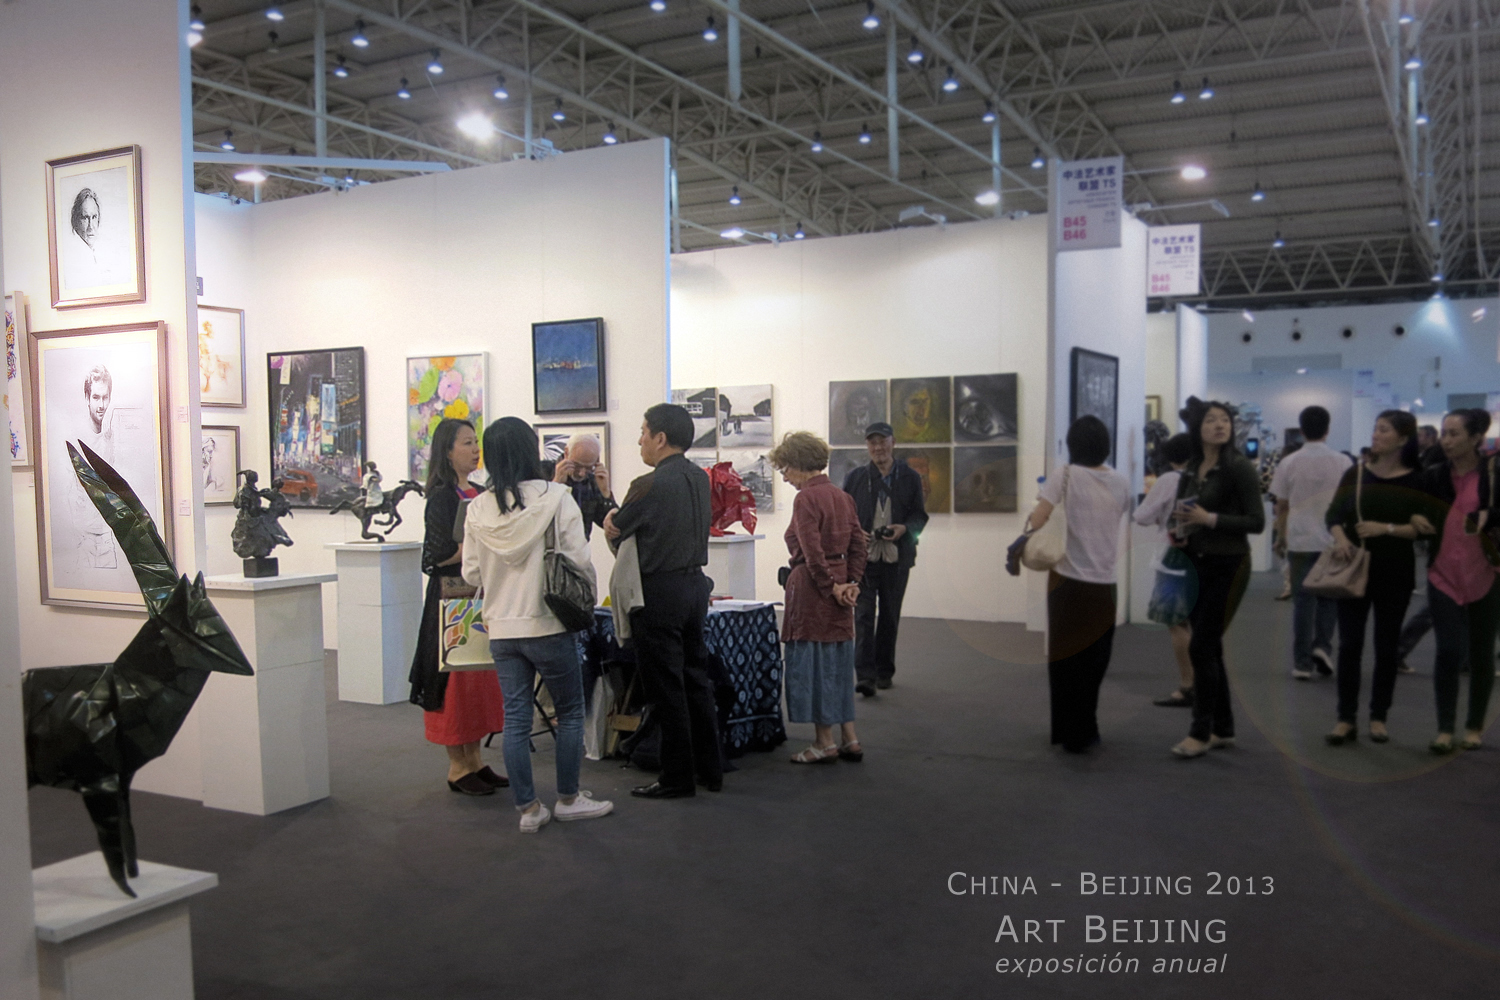 Beijing 2013 - Art Gallery